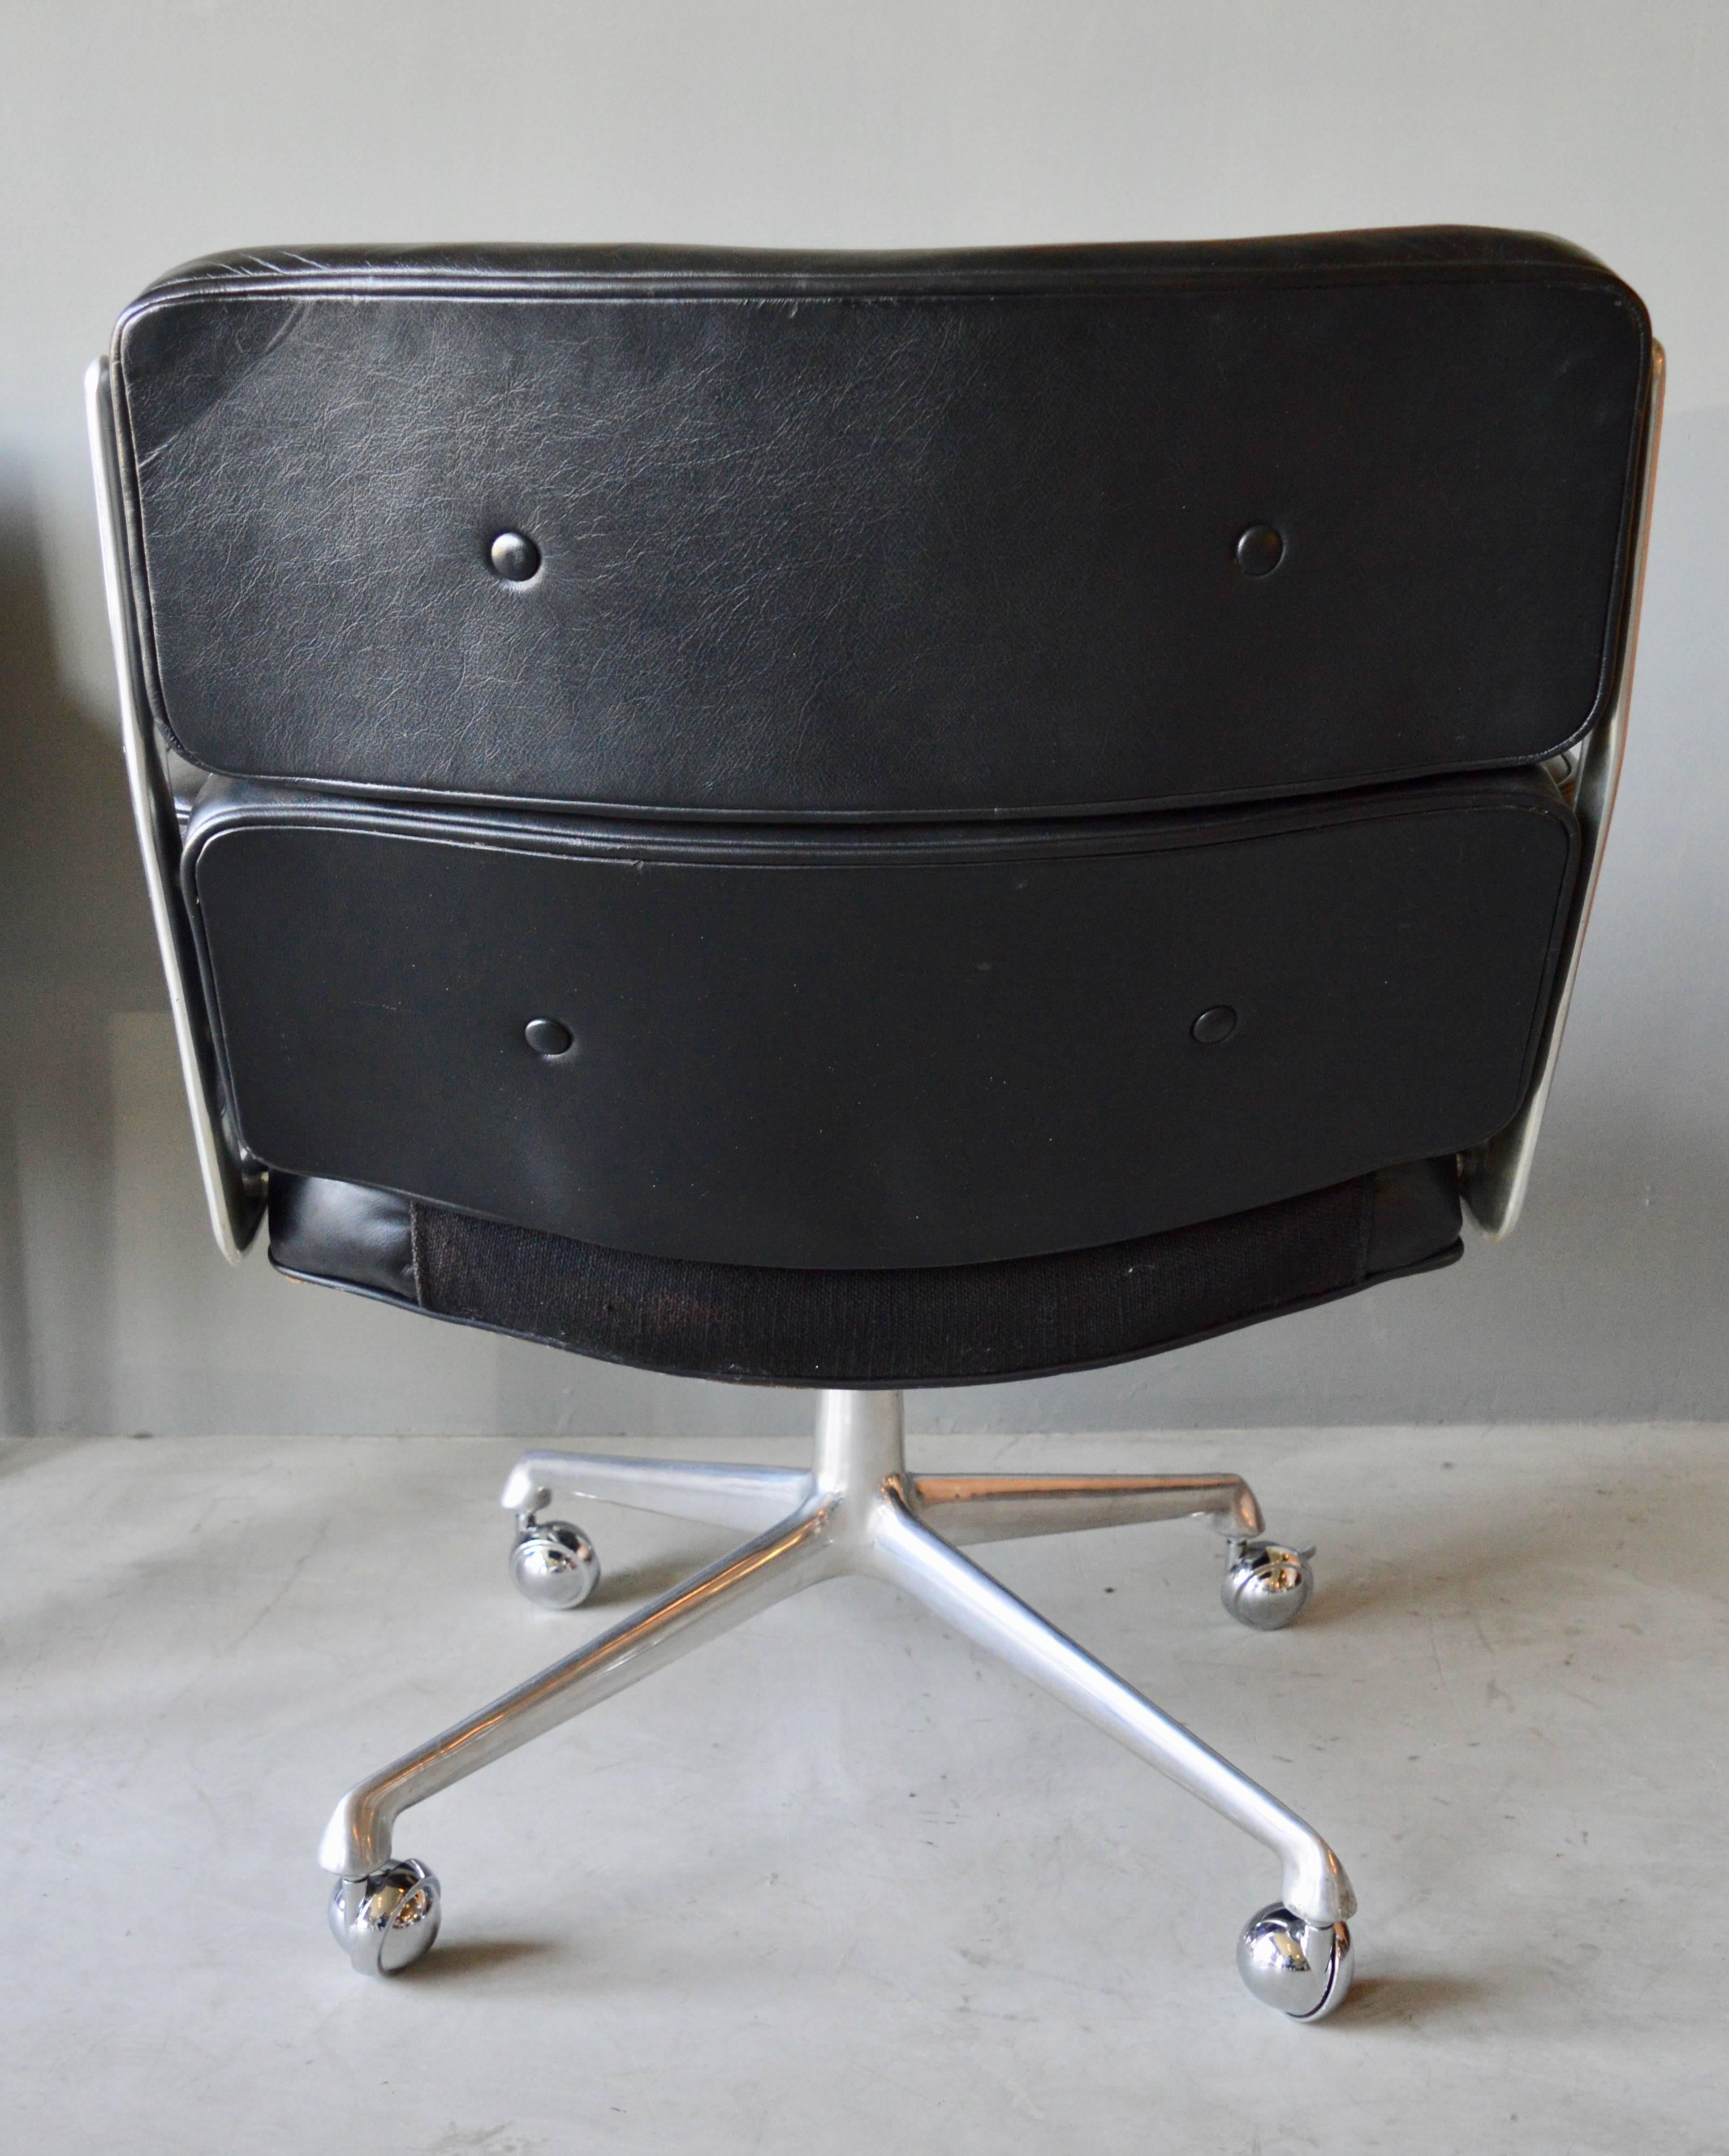 vintage black chair